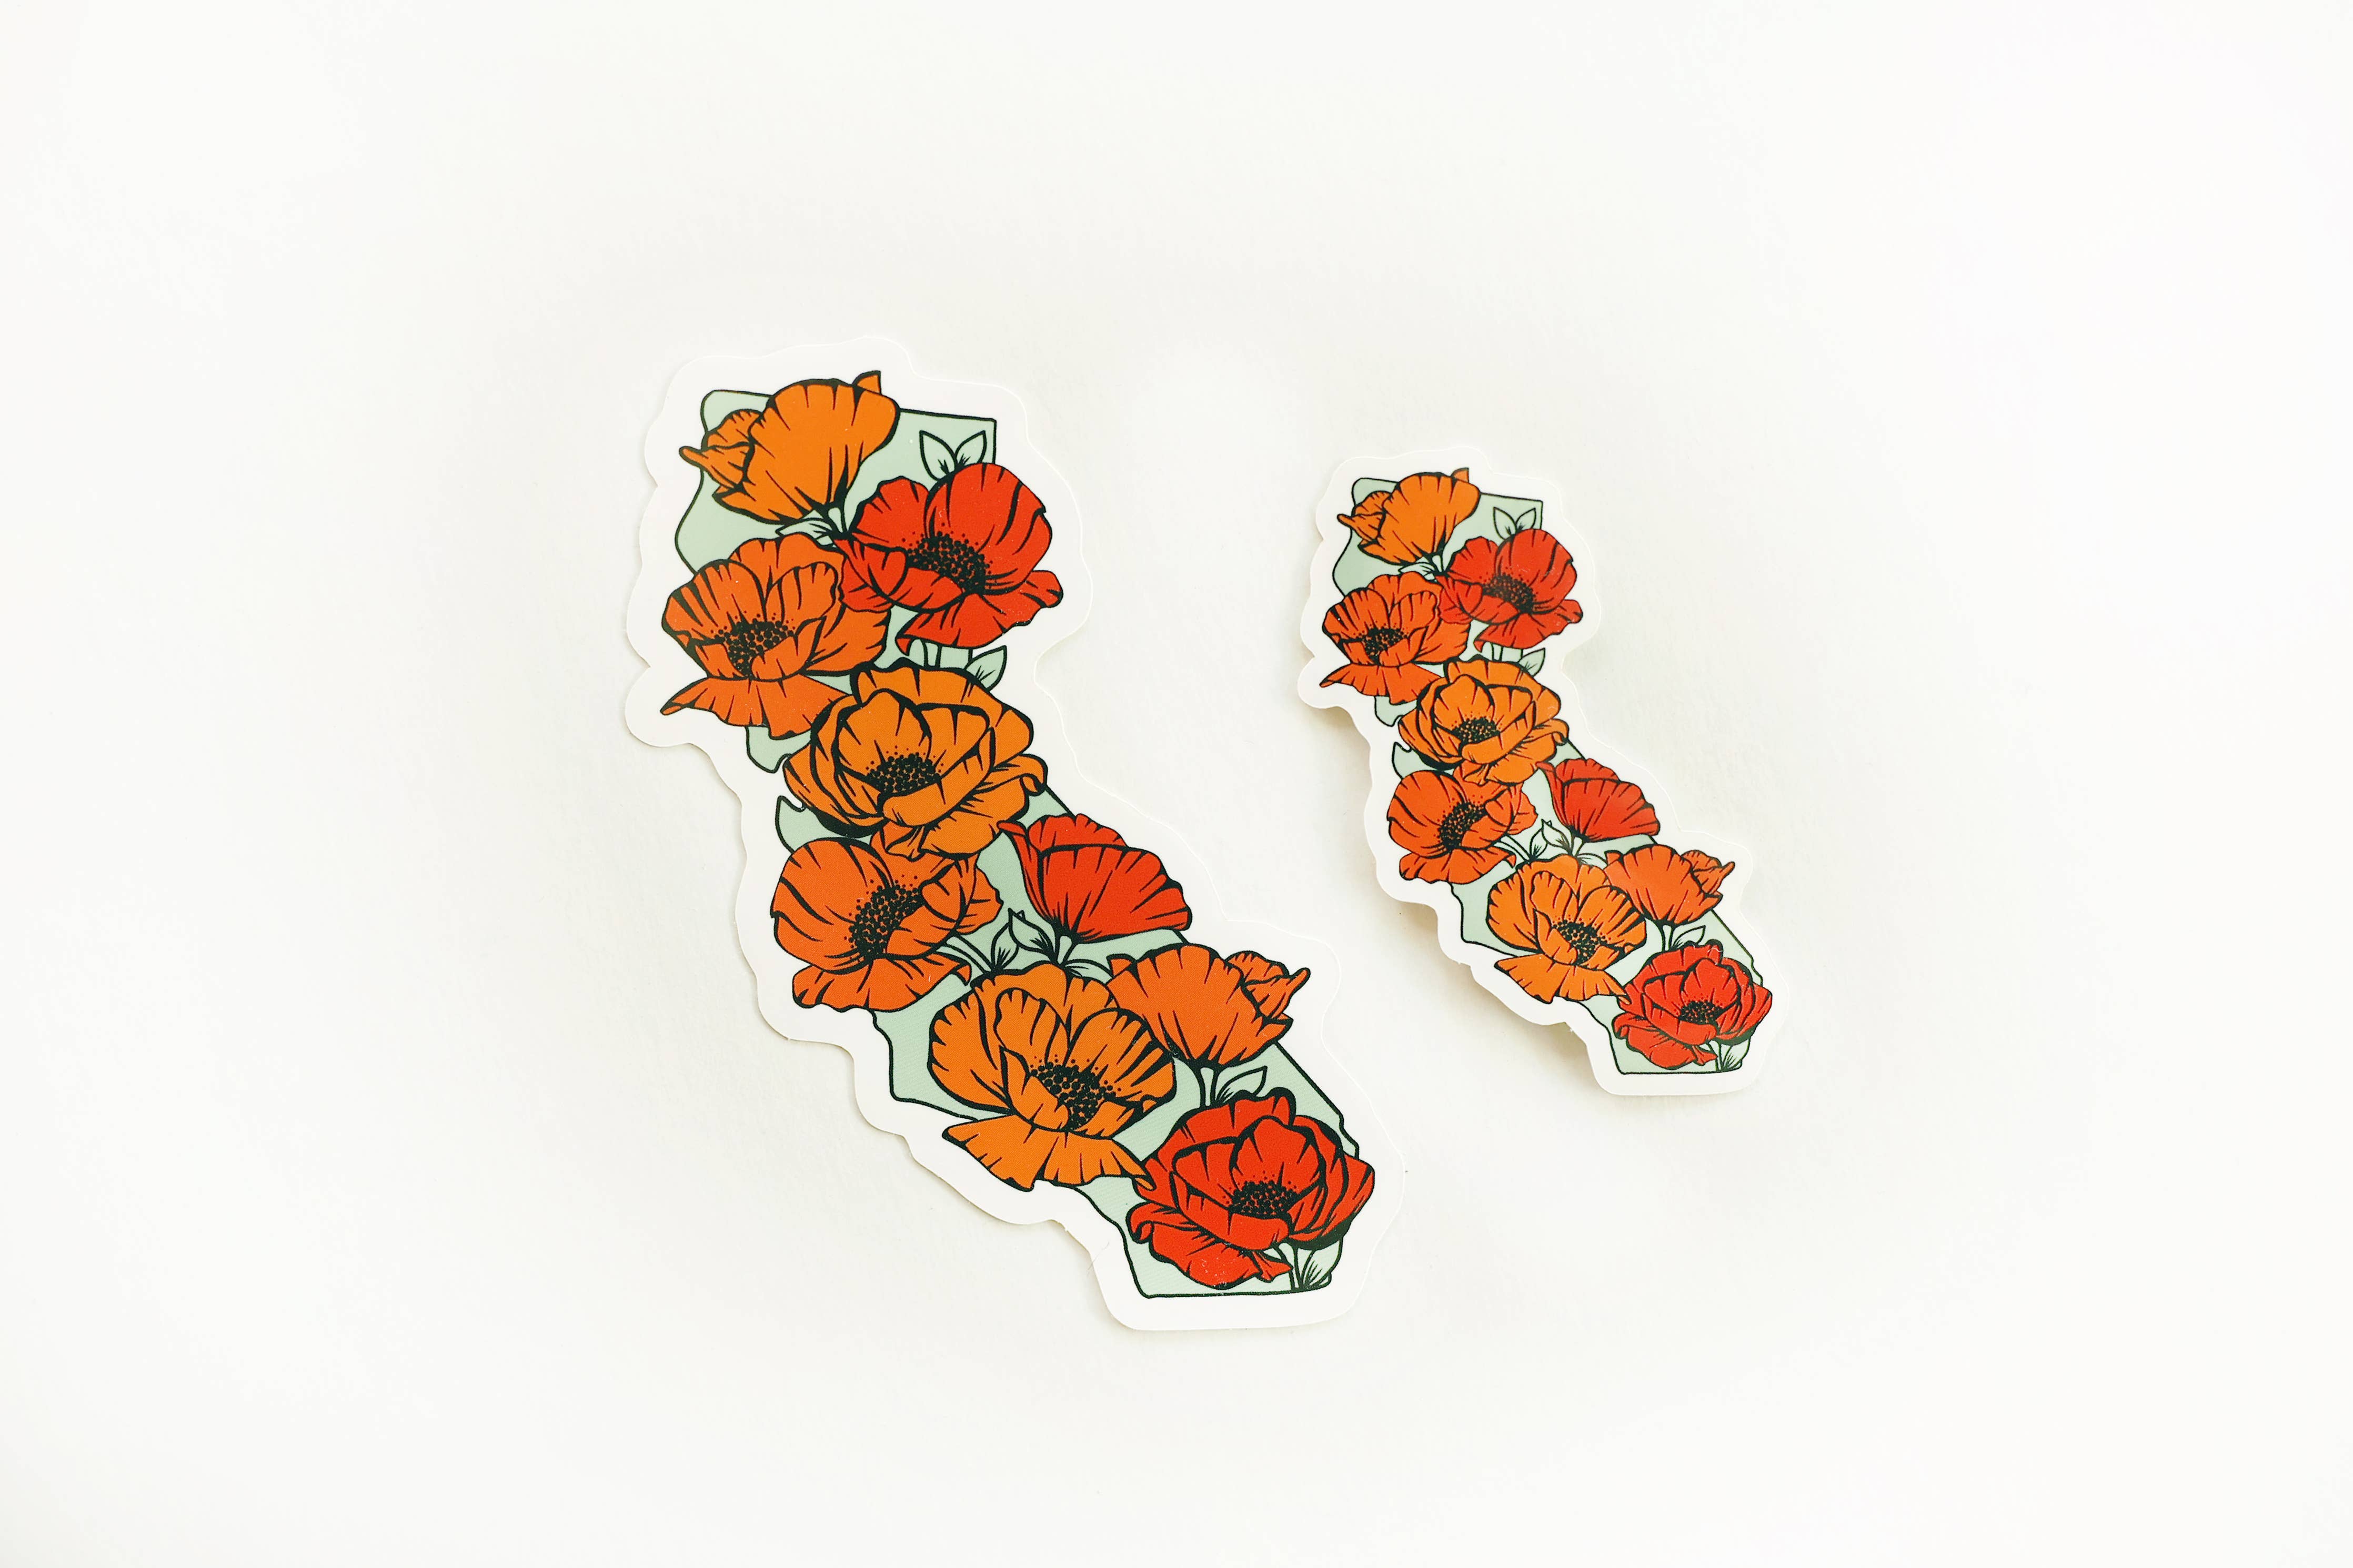 Kulana Stickers - California Full of Poppies Vinyl Sticker: (Regular) 2x3